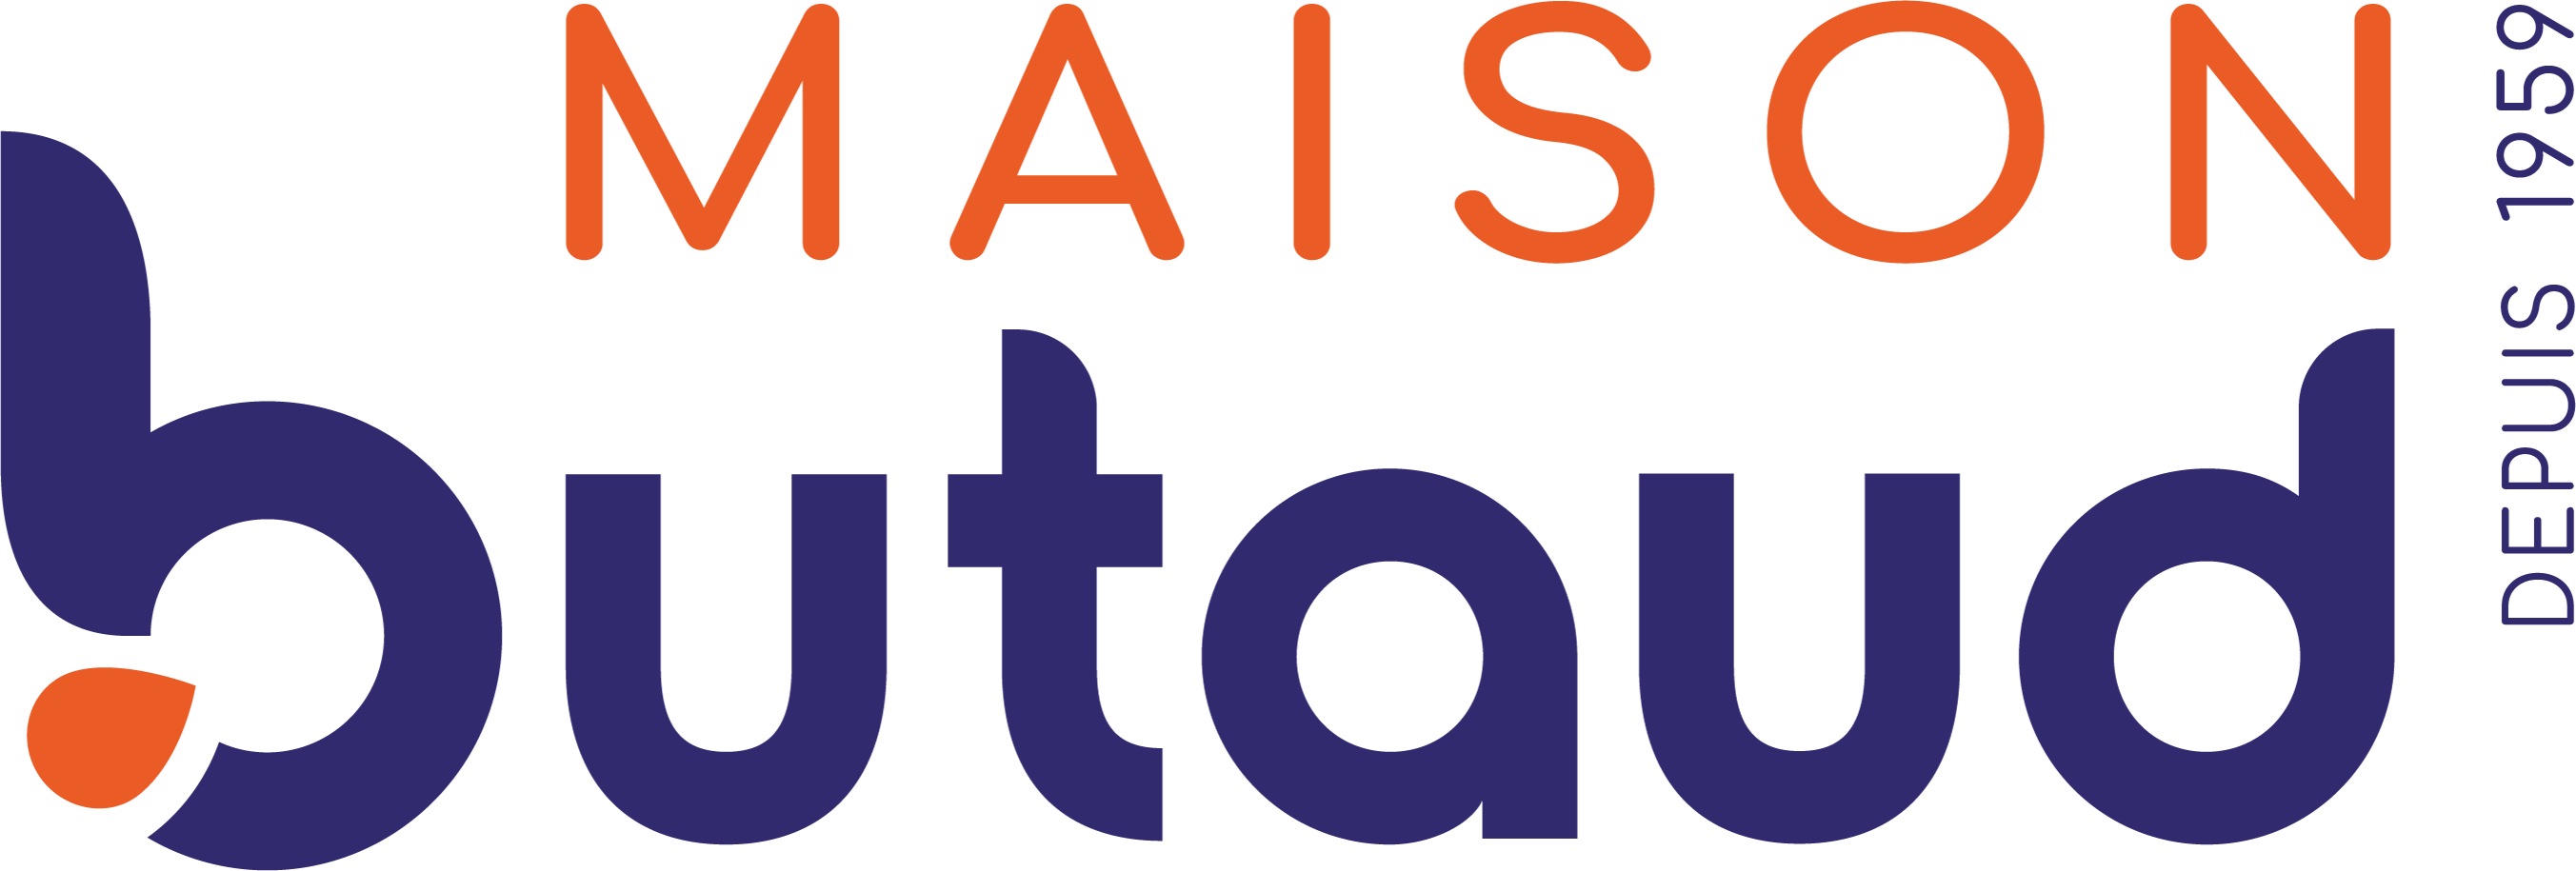 Nouveau logo Retina